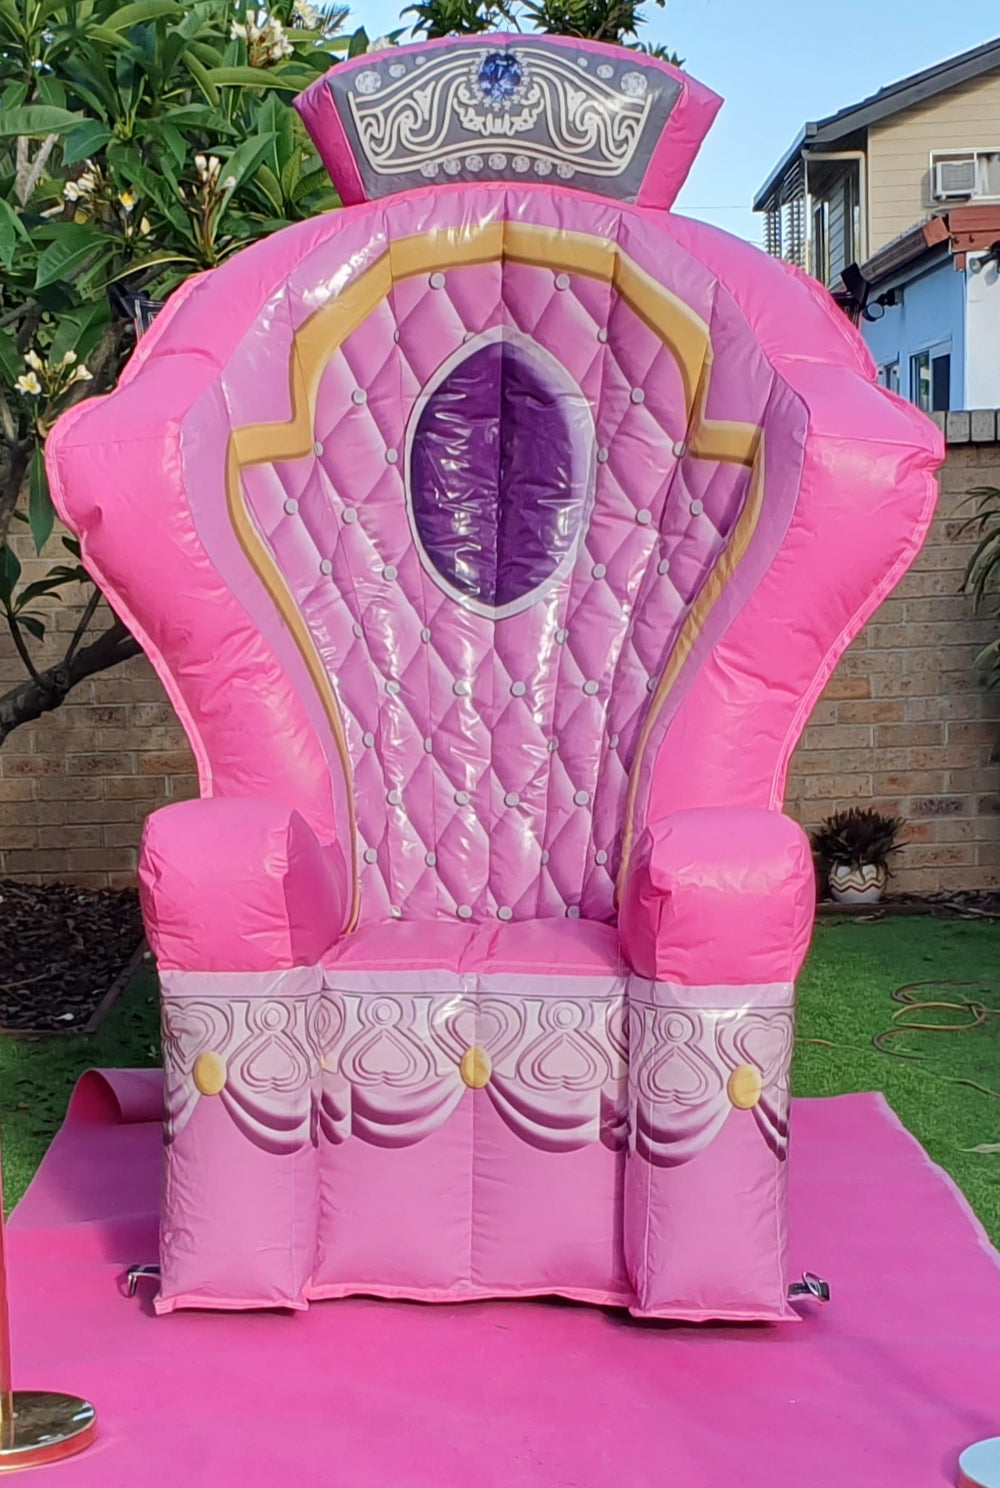 Queen Throne, North Brisbane